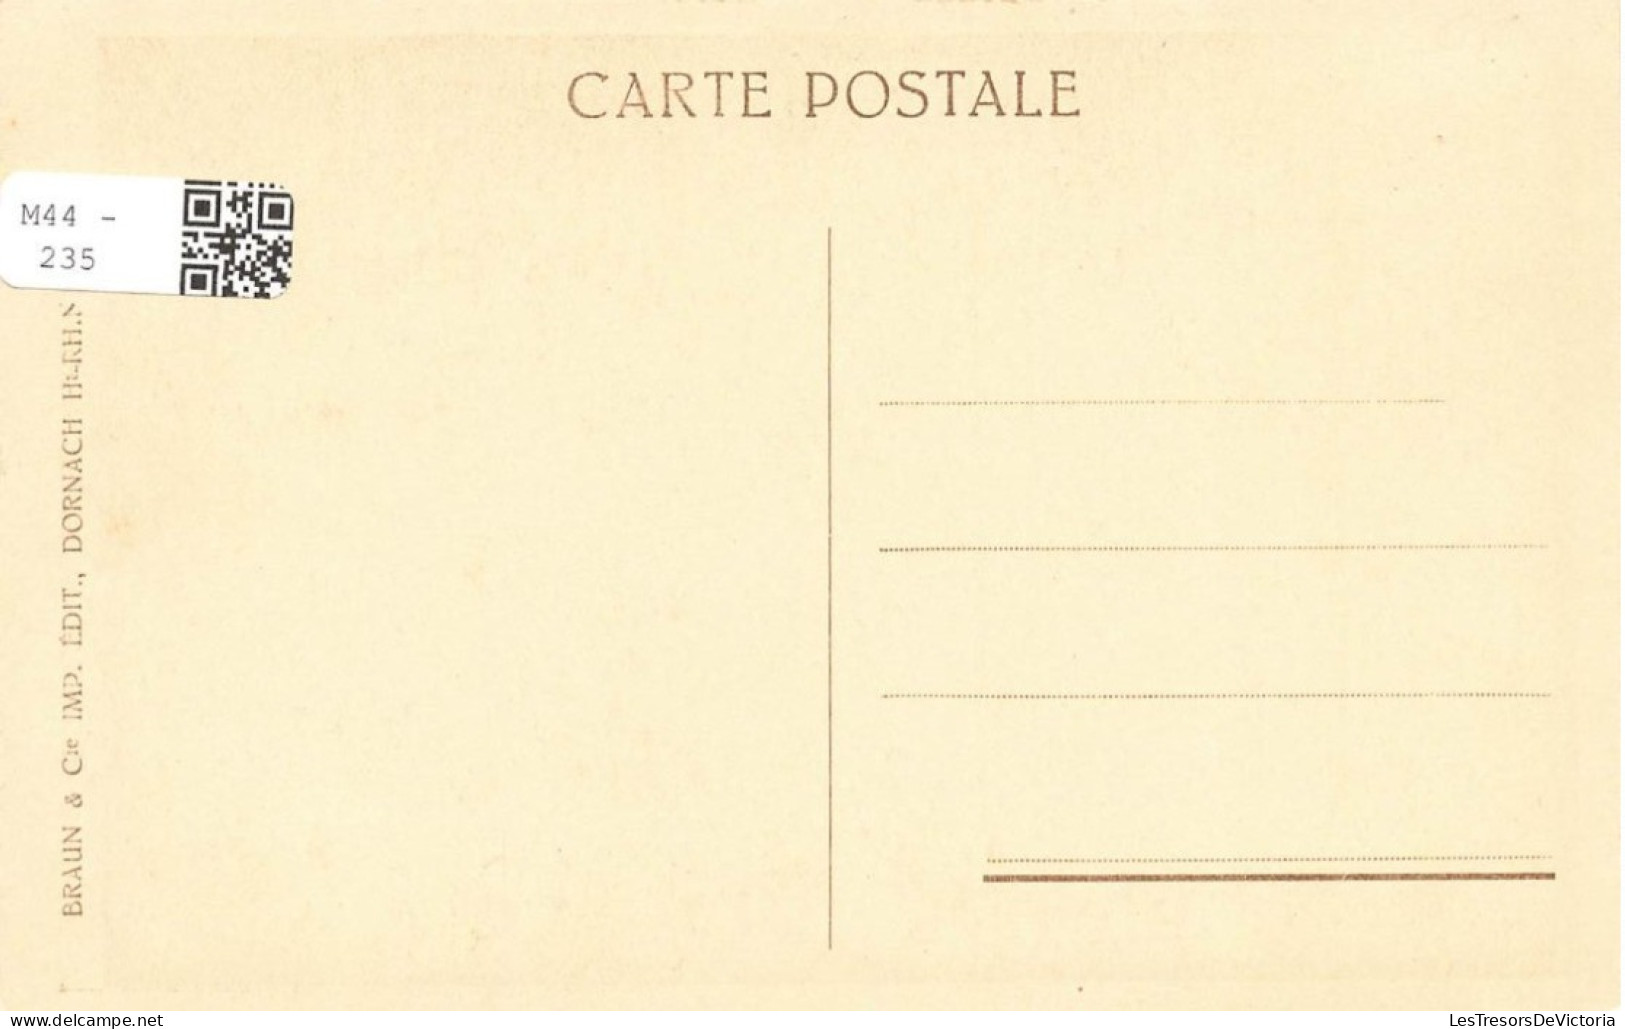 FRANCE - Ribeauvillé - Entrée De La Ville  - Carte Postale Ancienne - Ribeauvillé